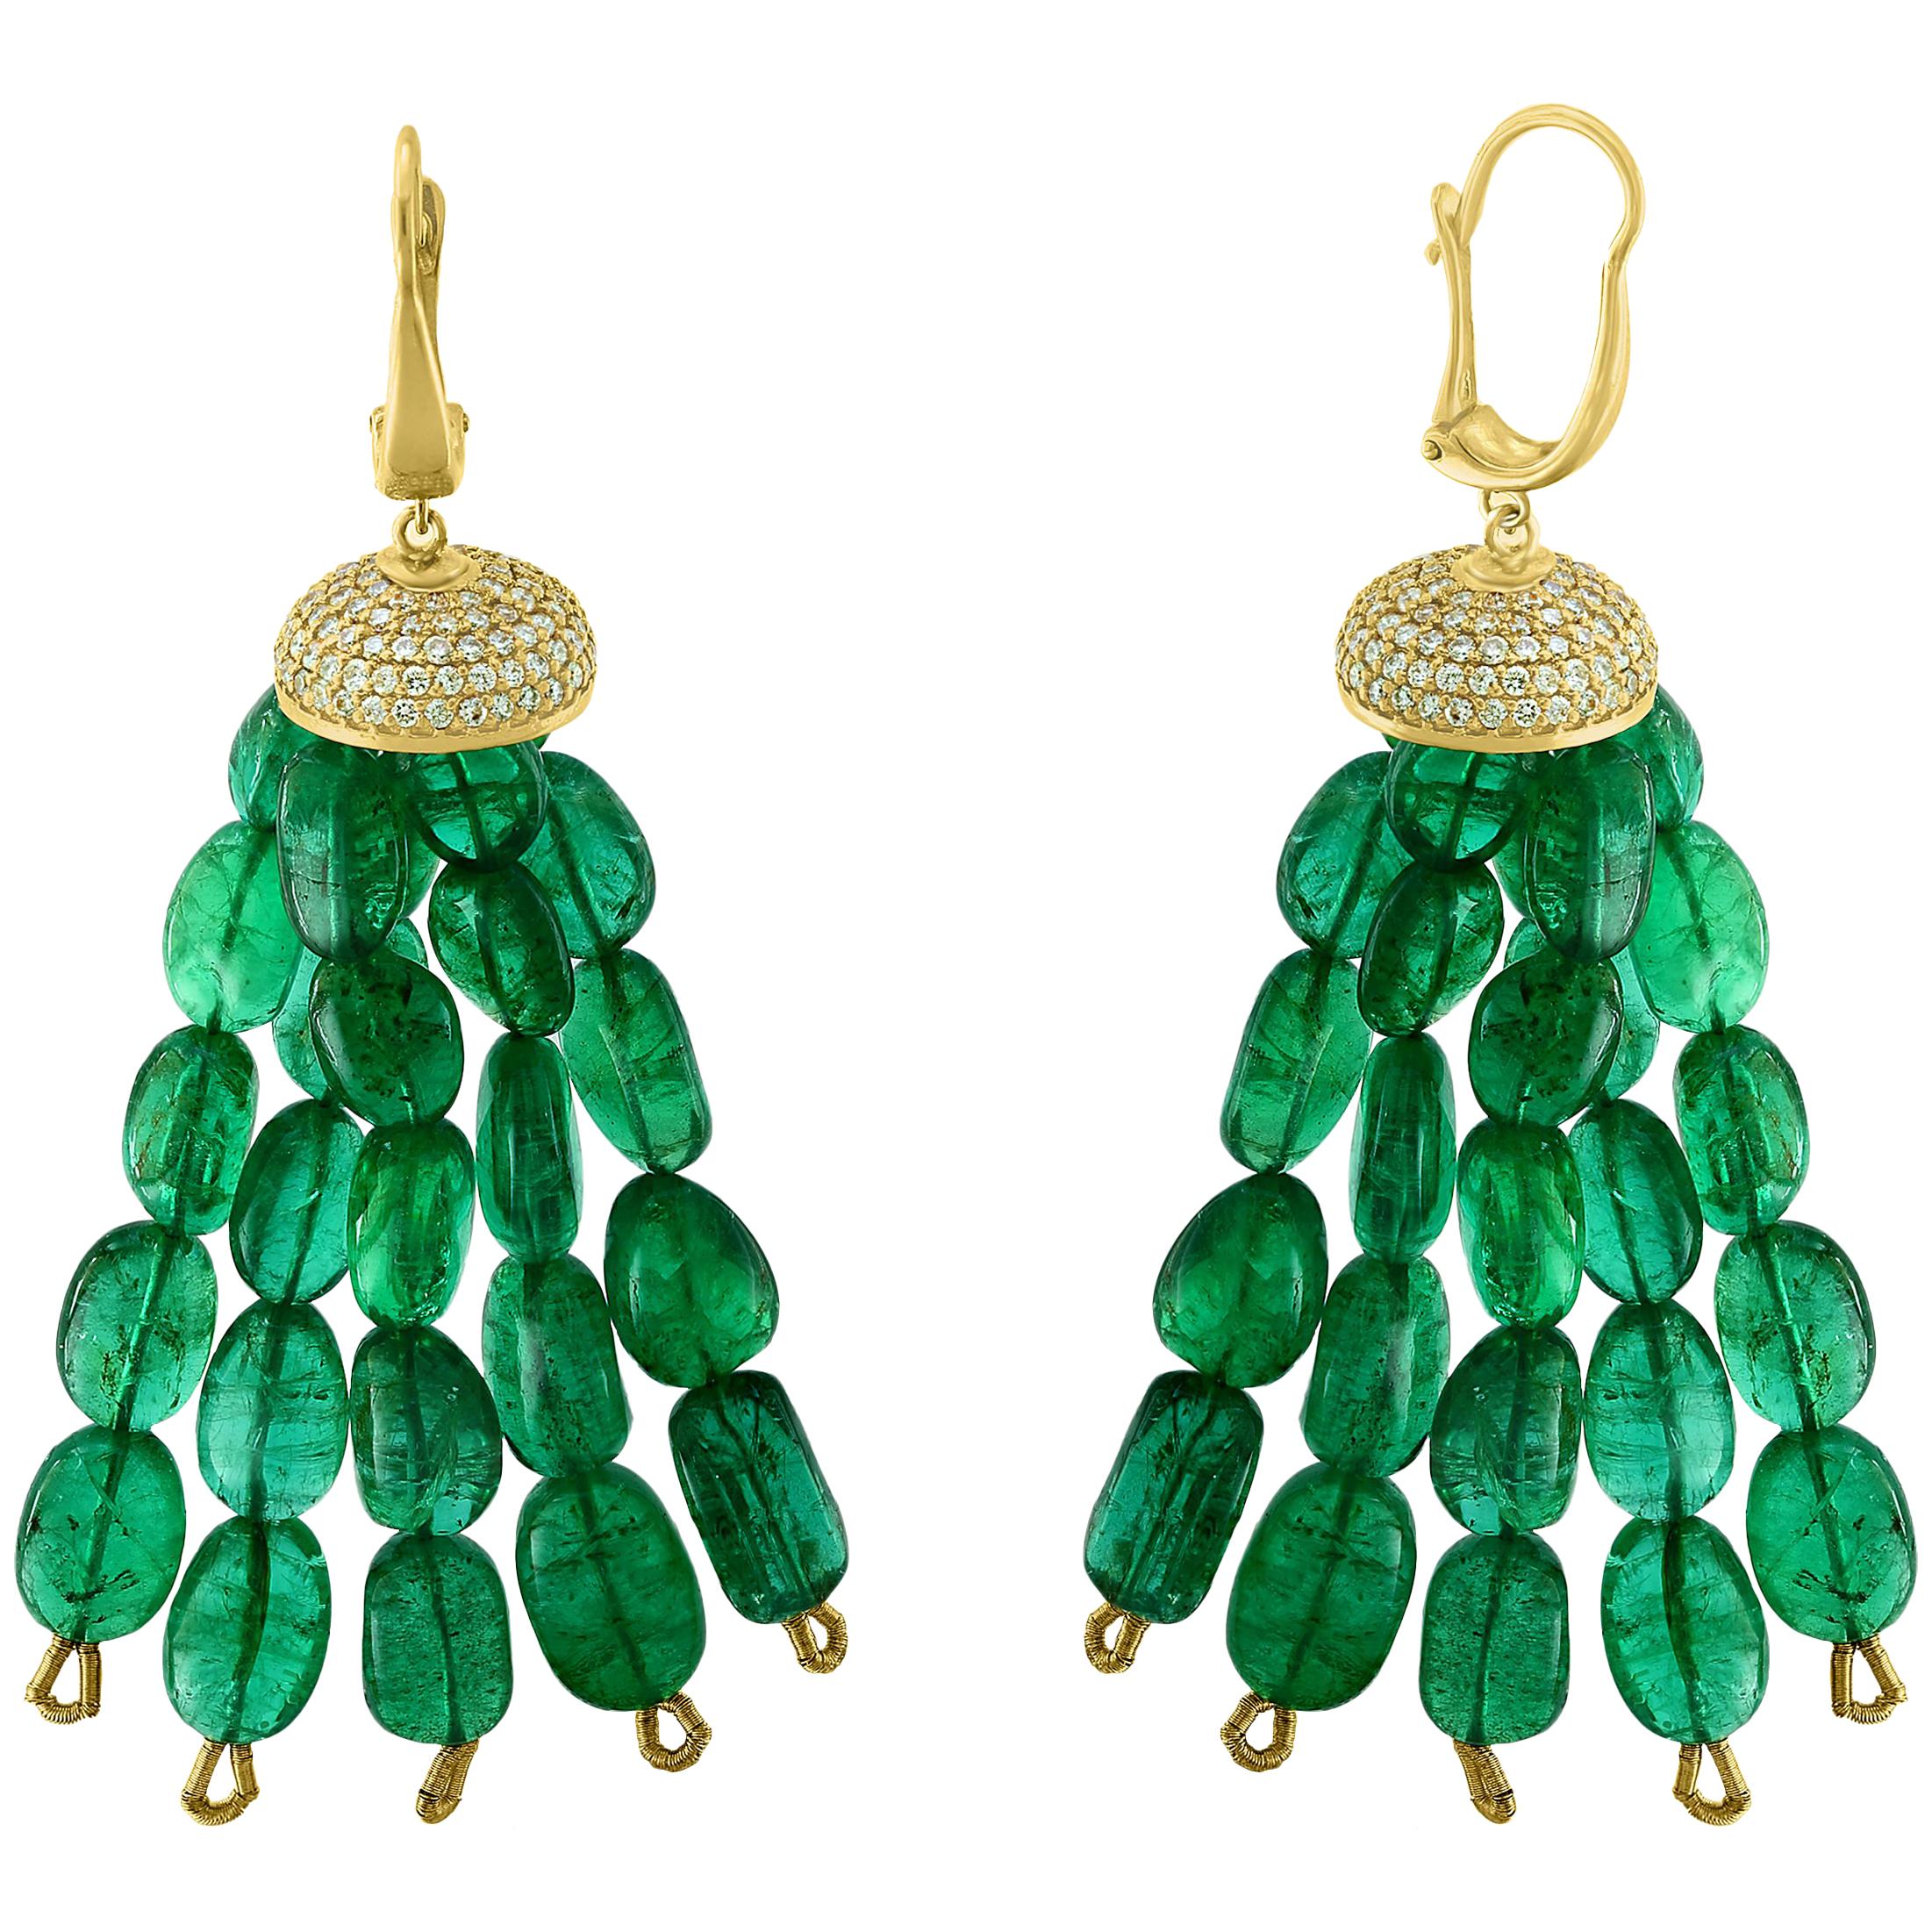 150 Carat Emerald Beads and Diamond Hanging/ Drop Earrings 14 Karat Yellow Gold